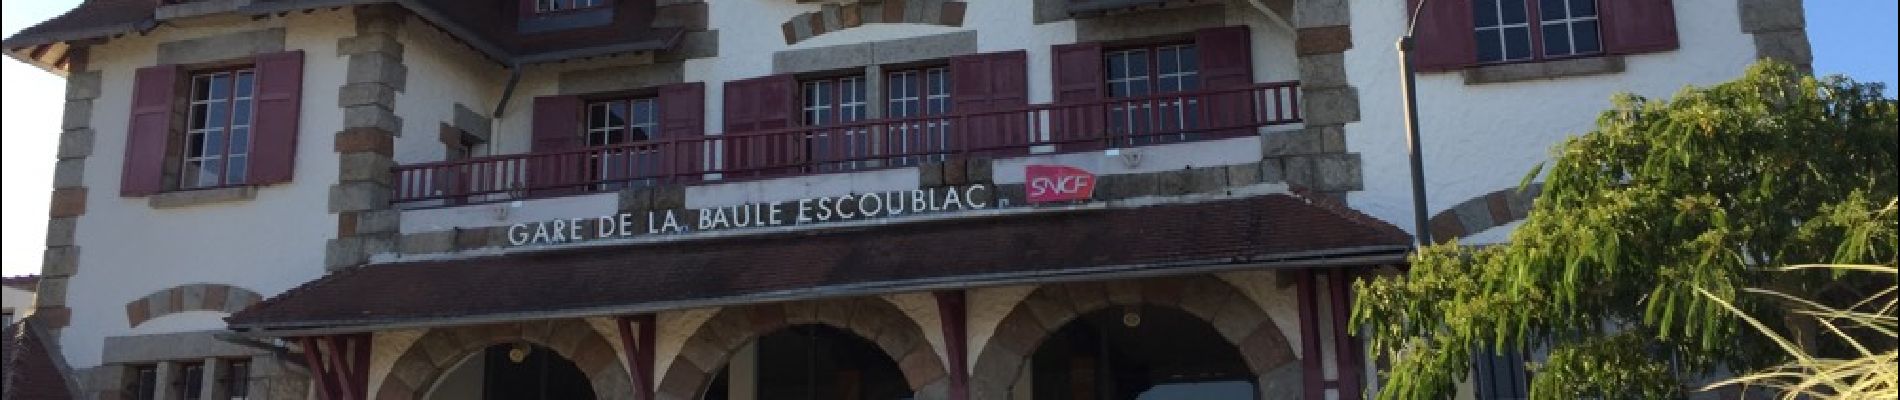 Tour Wandern La Baule-Escoublac - gare  La Baule Escoubac - Photo